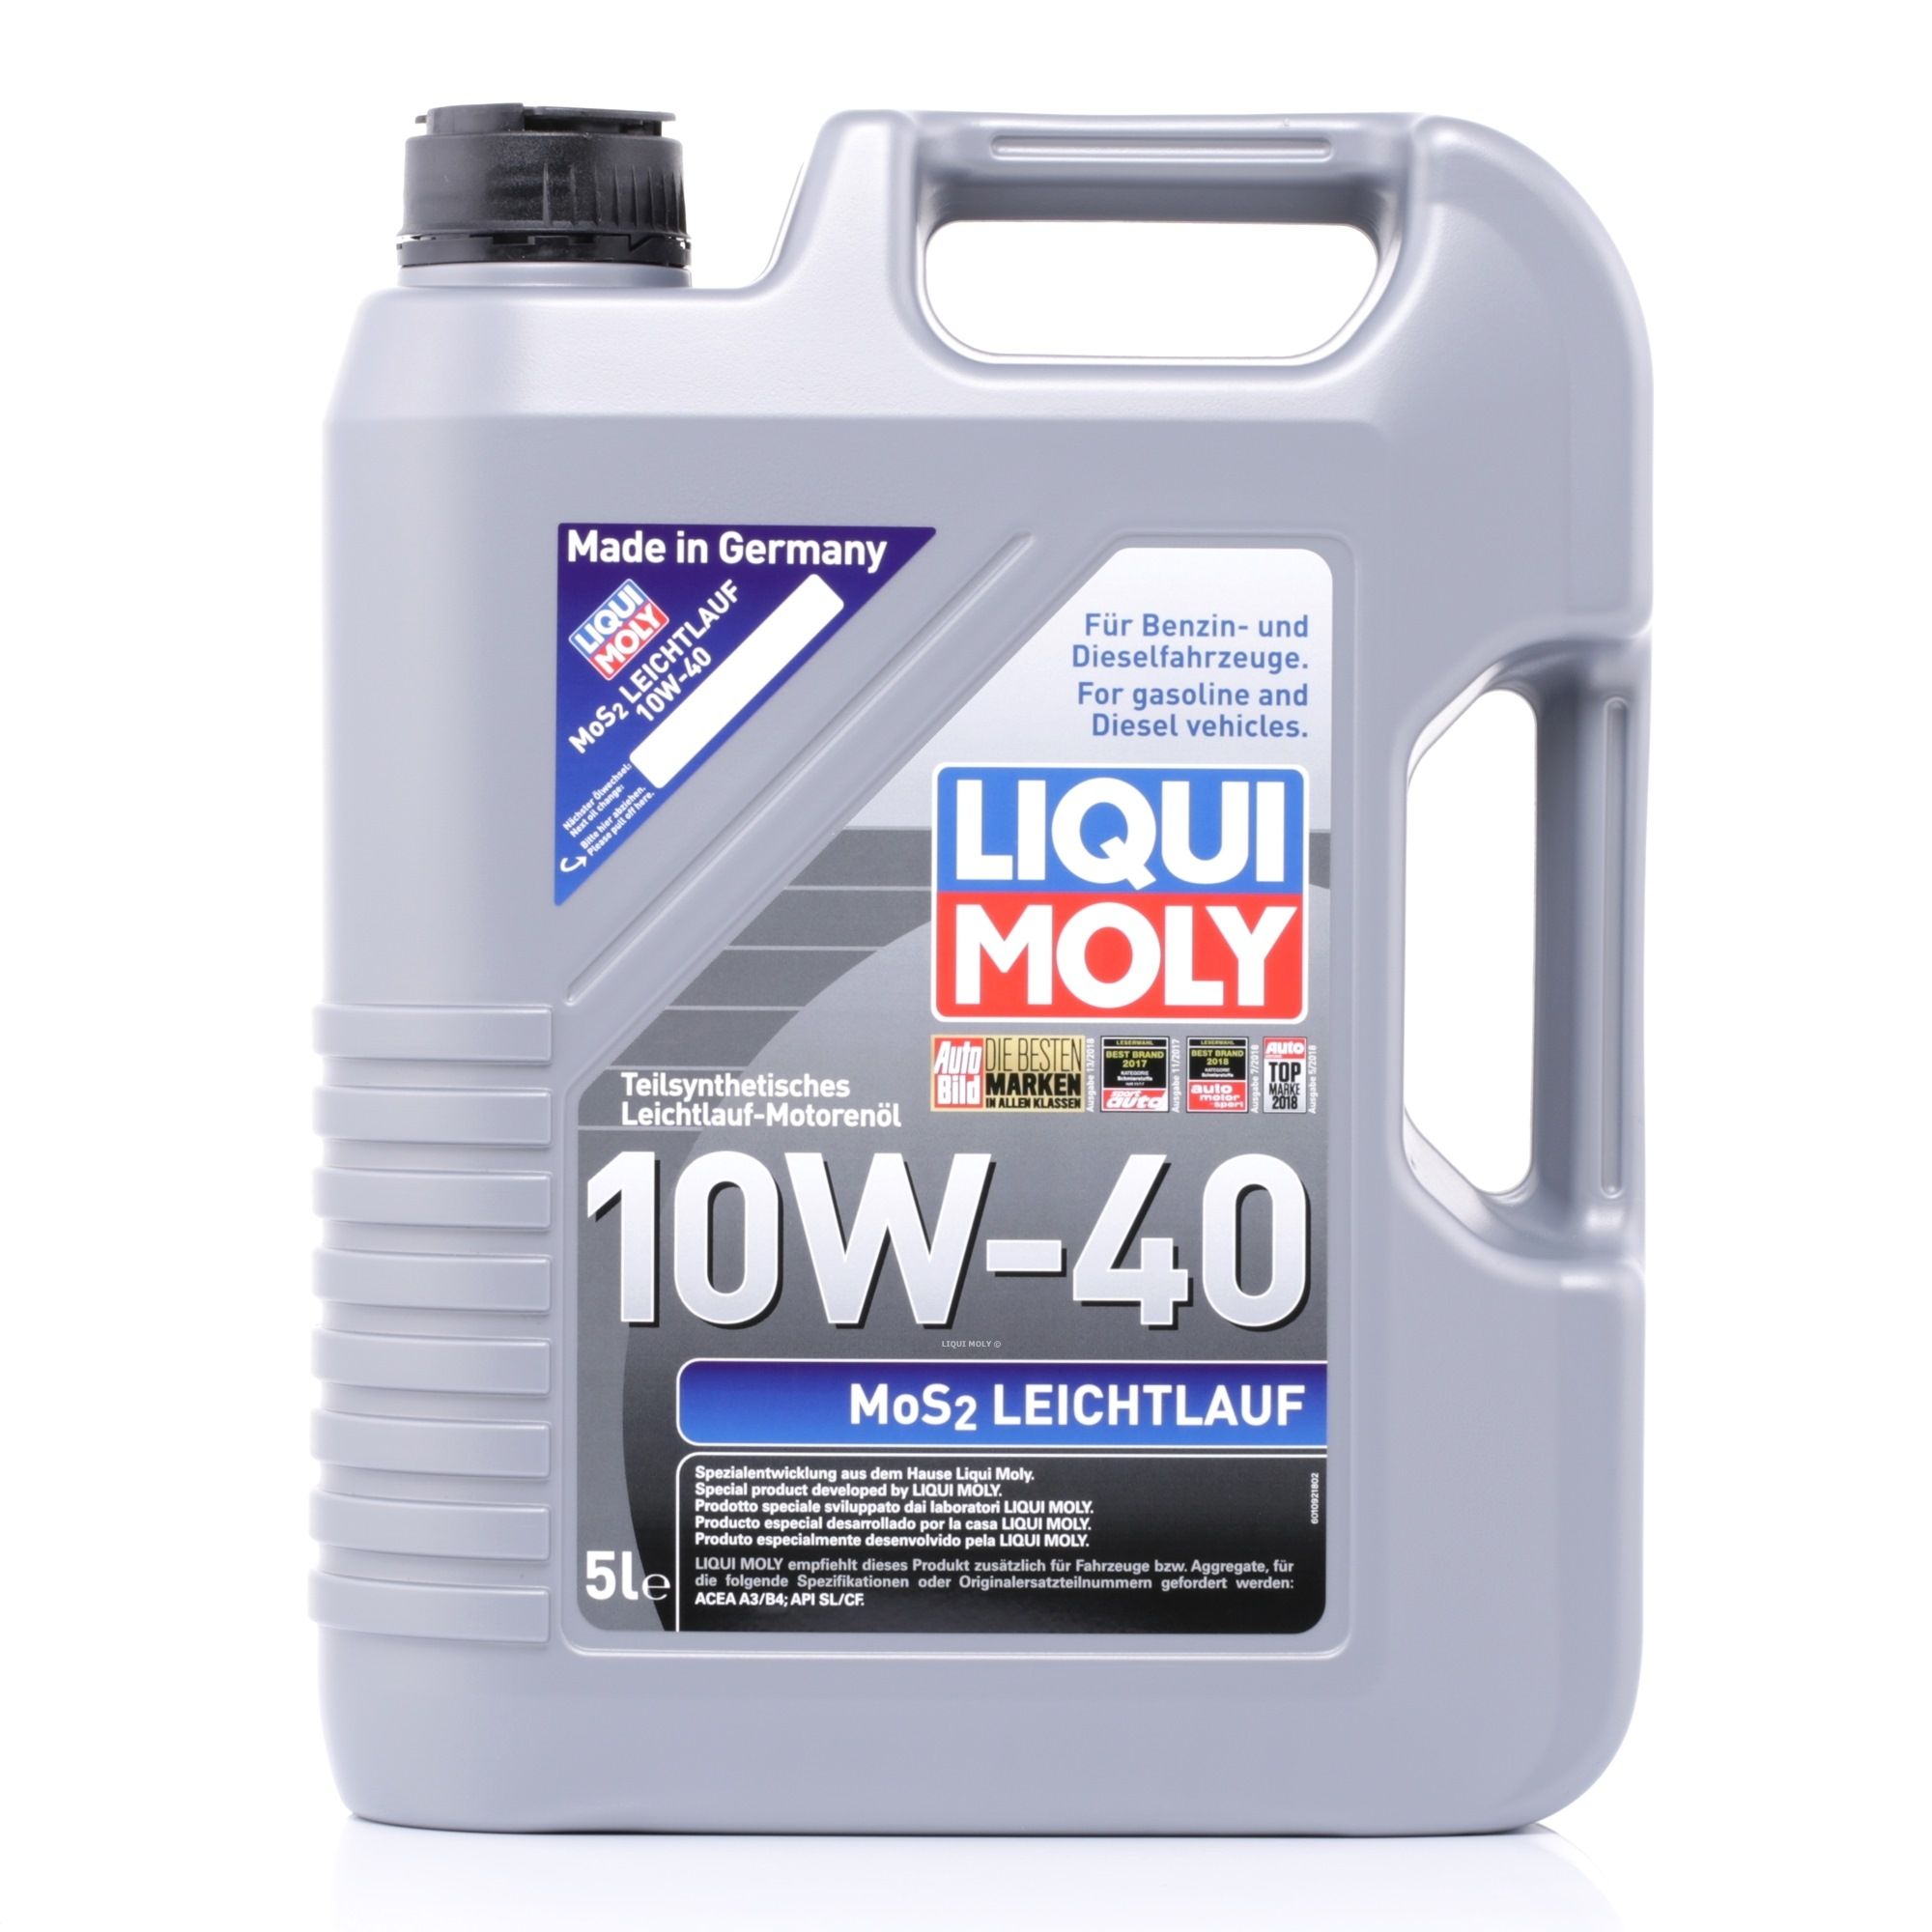 LIQUI MOLY 2184 originales VOLKSWAGEN Aceite de motor 10W-40, 5L, aceite parcialmente sintético